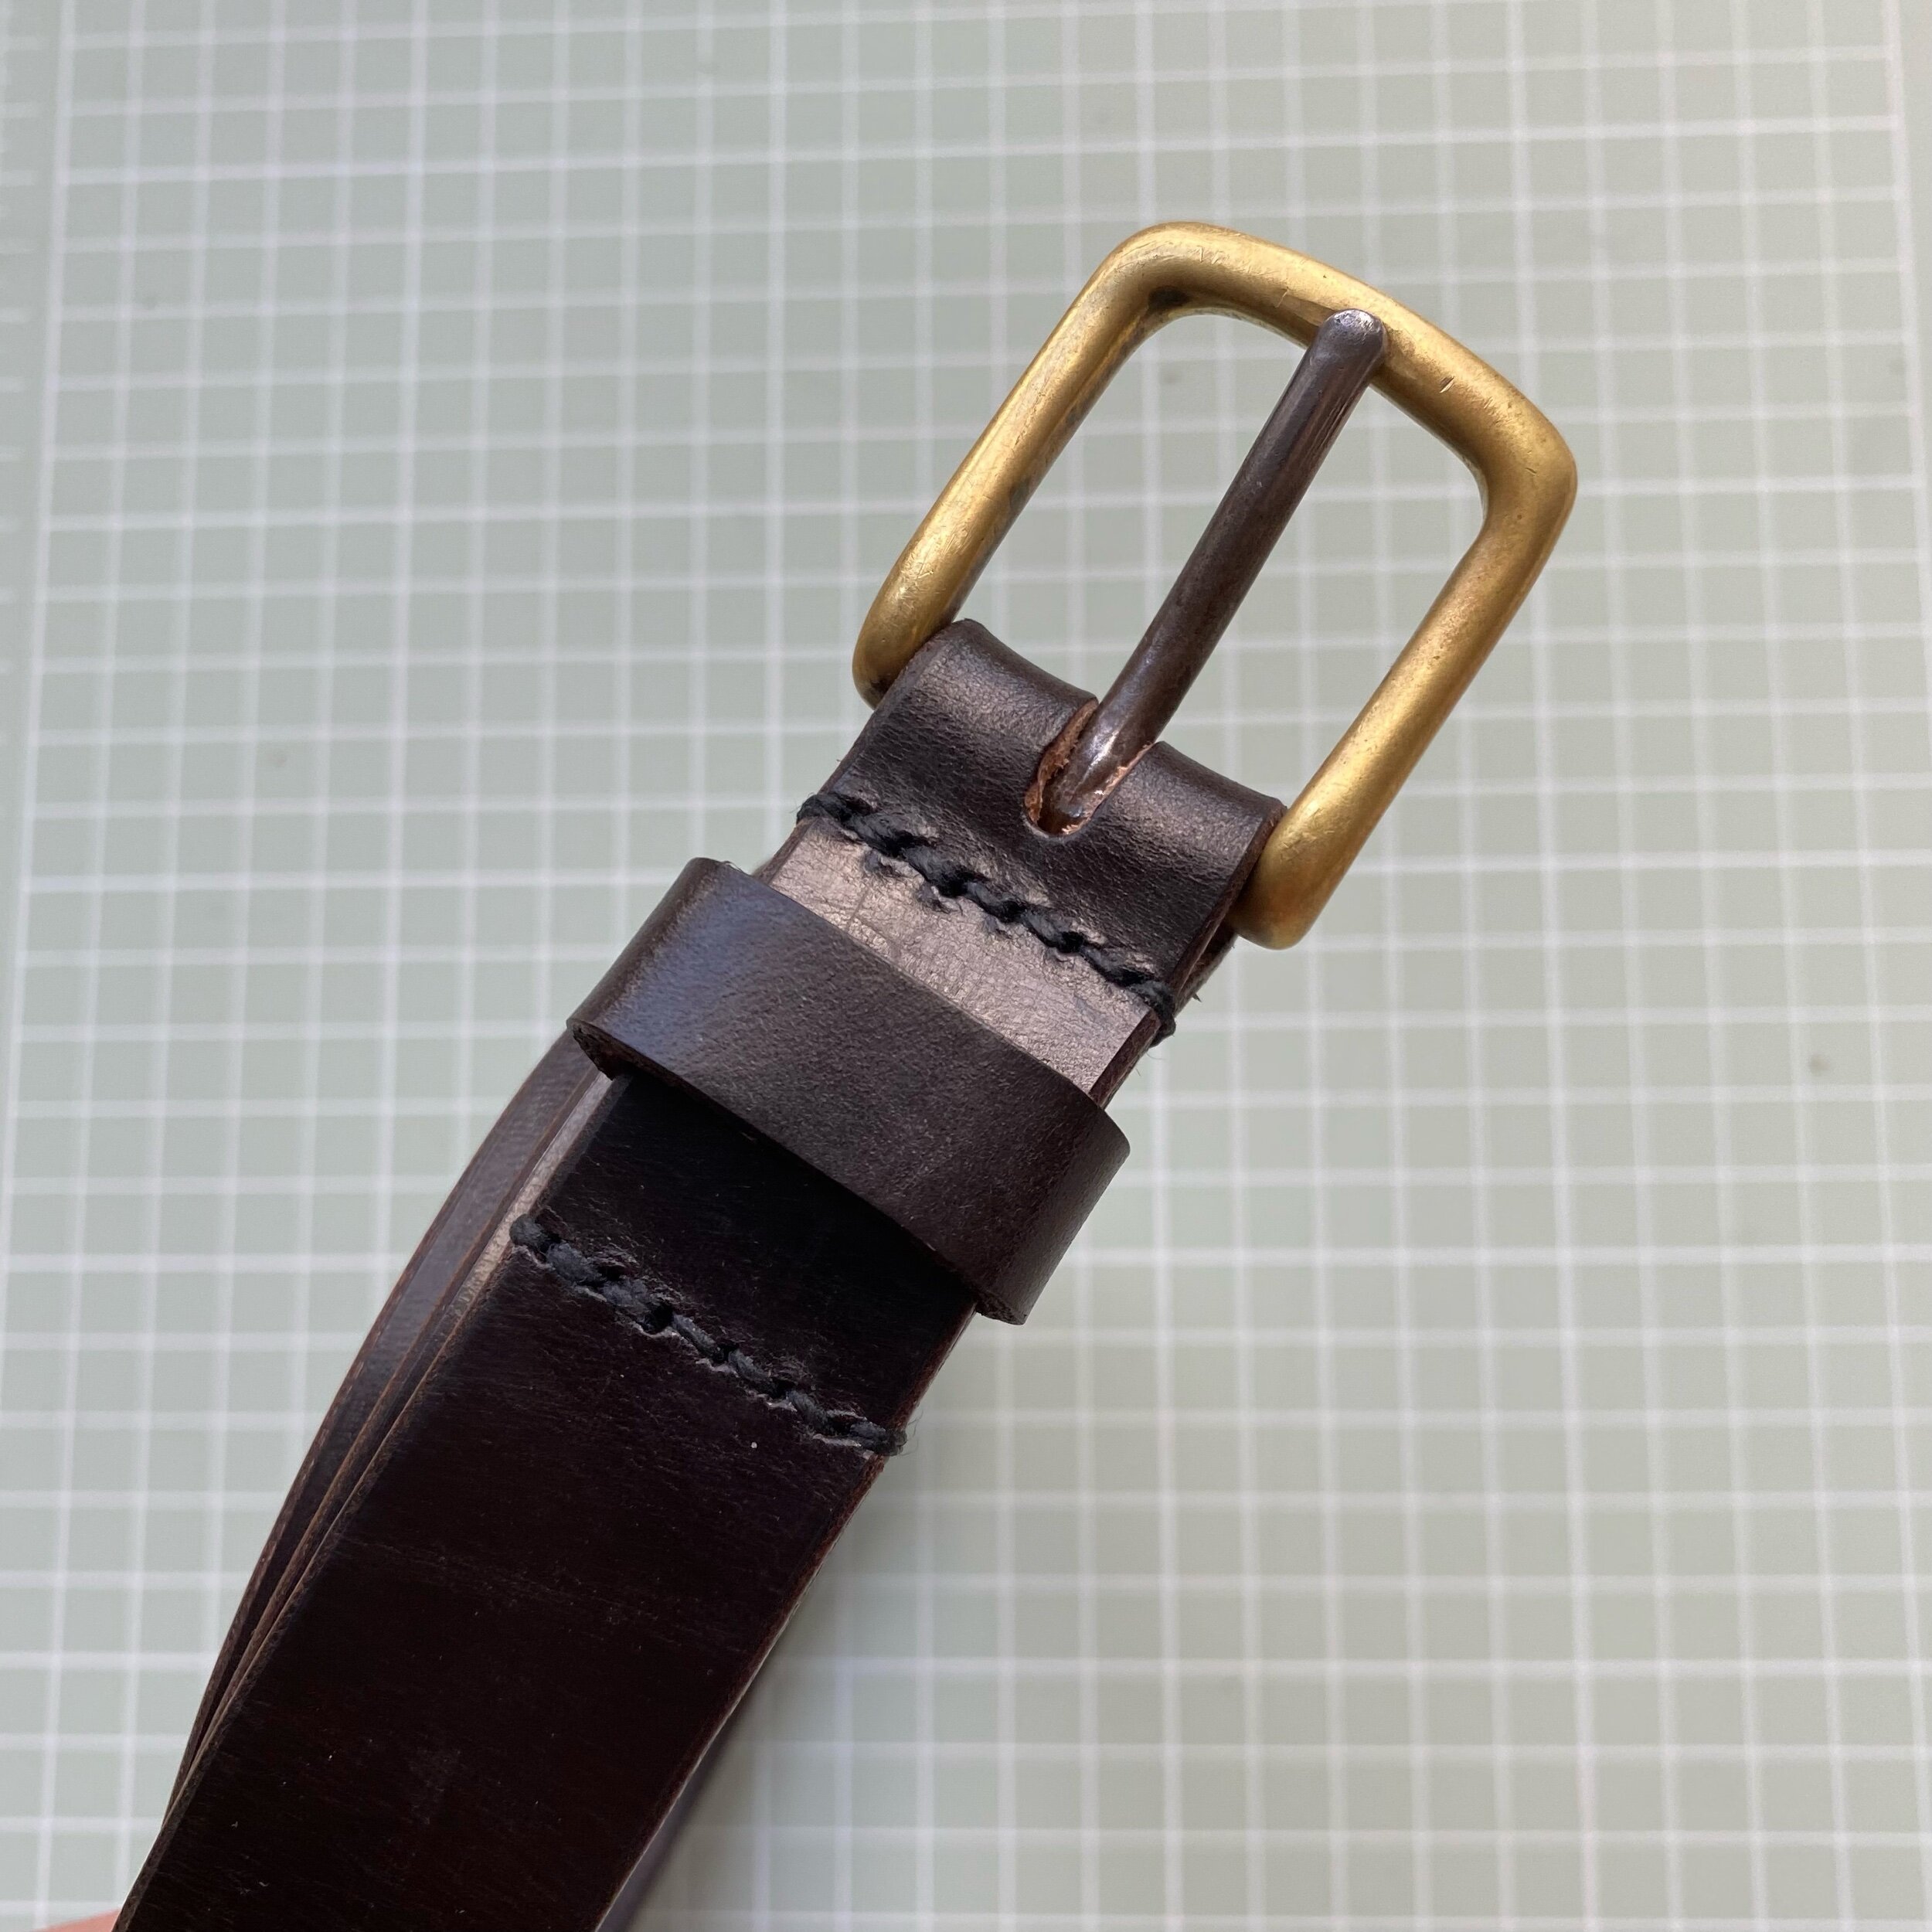 leather belt repairs